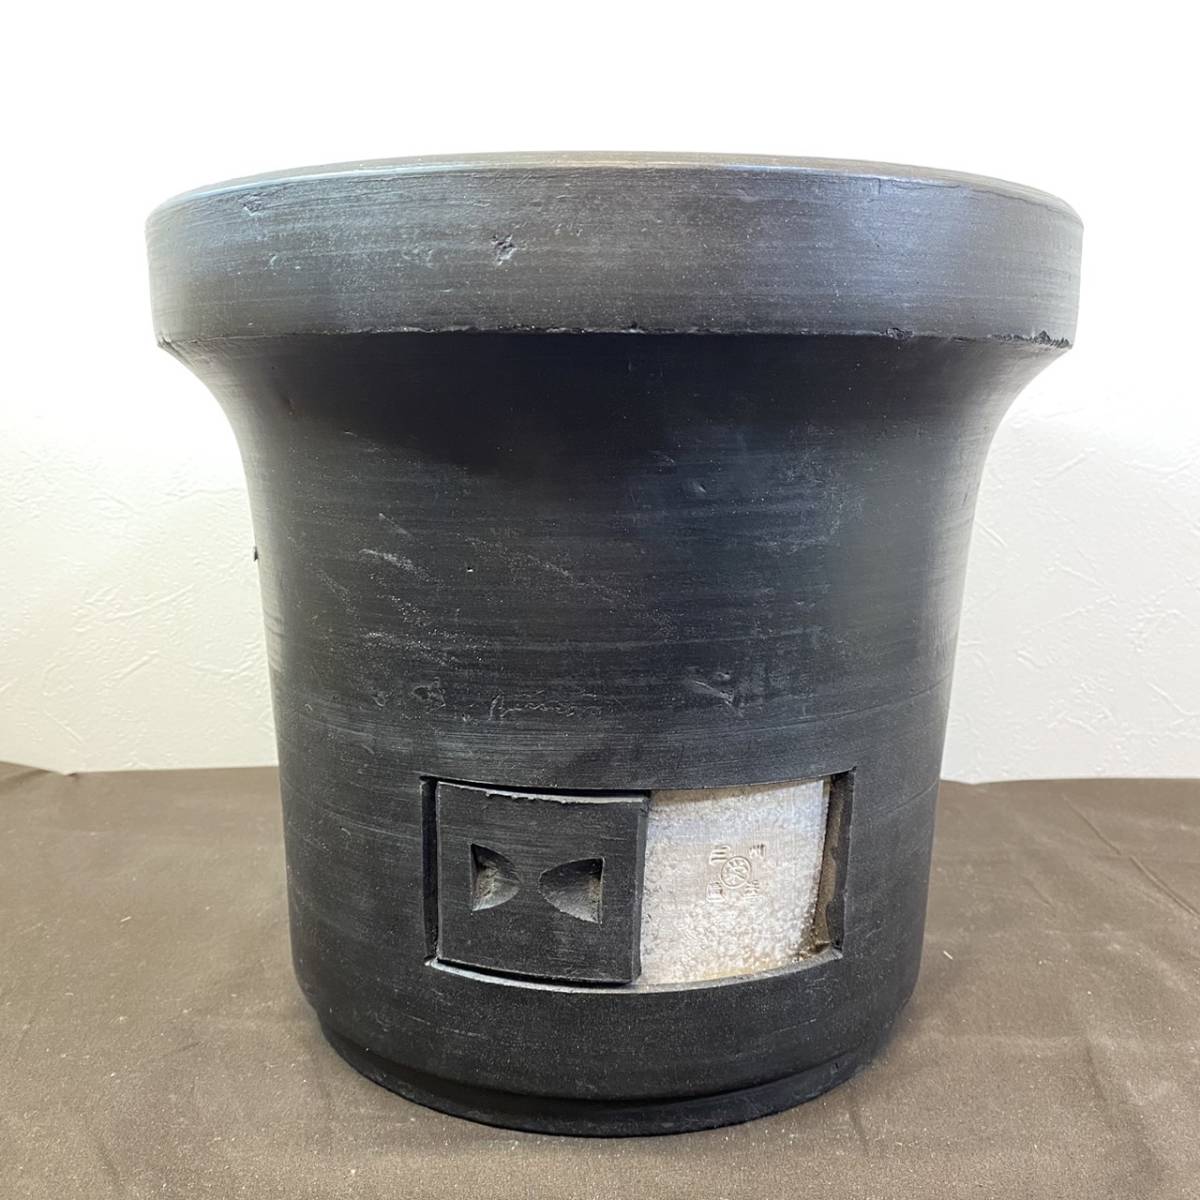 [MH-5680] не использовался товар чёрный жаровня Mikawa название производство уголь жарение решётка Mikawa жарение традиция прикладное искусство 28cm жаровня три . грамм ... произведение редкий нехватка товара 